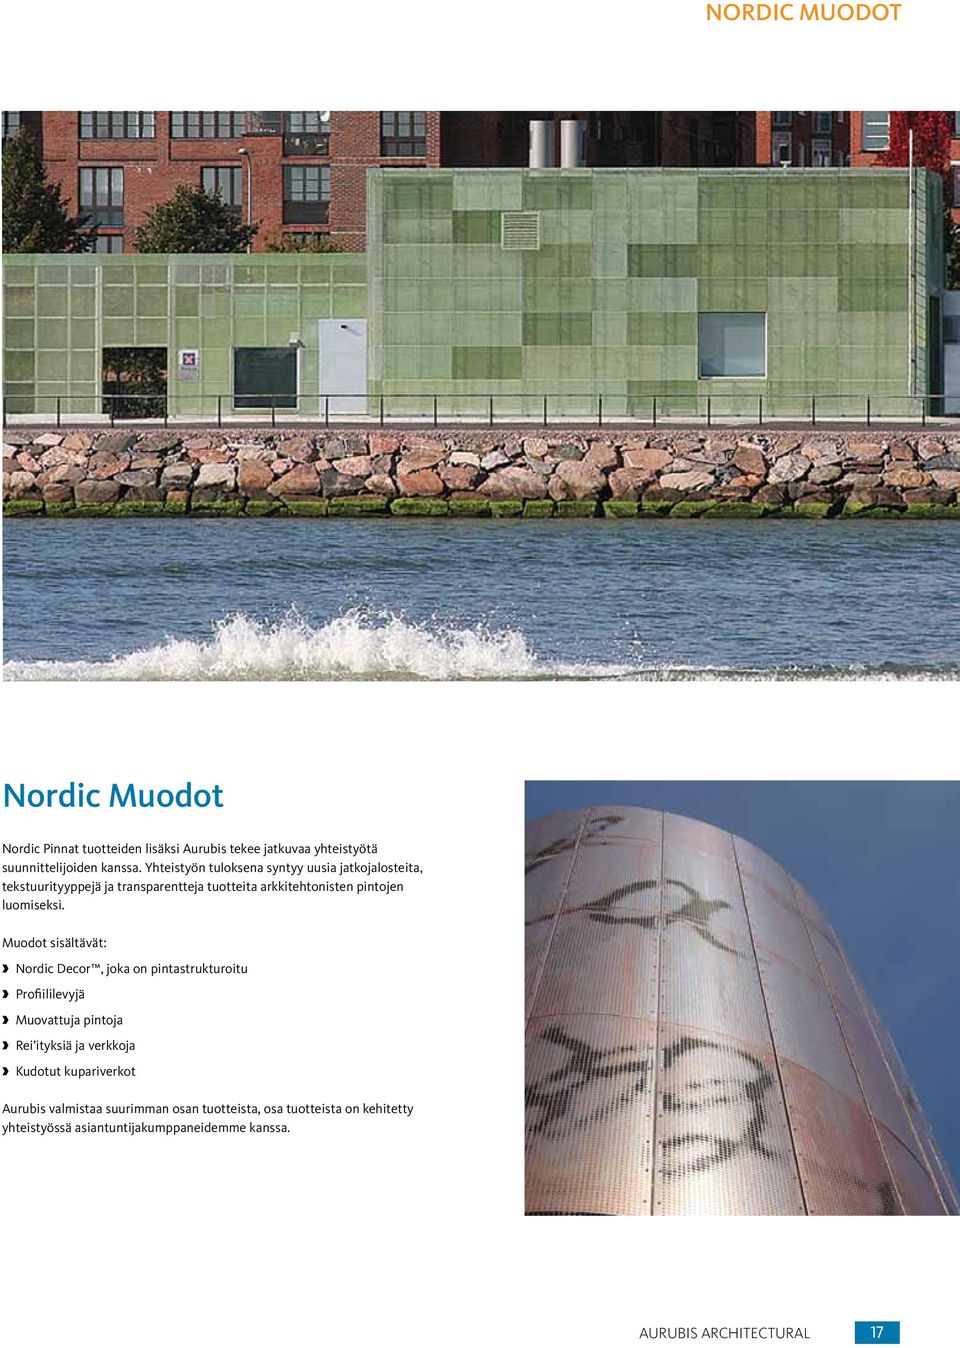 Muodot sisältävät: Nordic Decor, joka on pintastrukturoitu Profiililevyjä Muovattuja pintoja Rei ityksiä ja verkkoja Kudotut